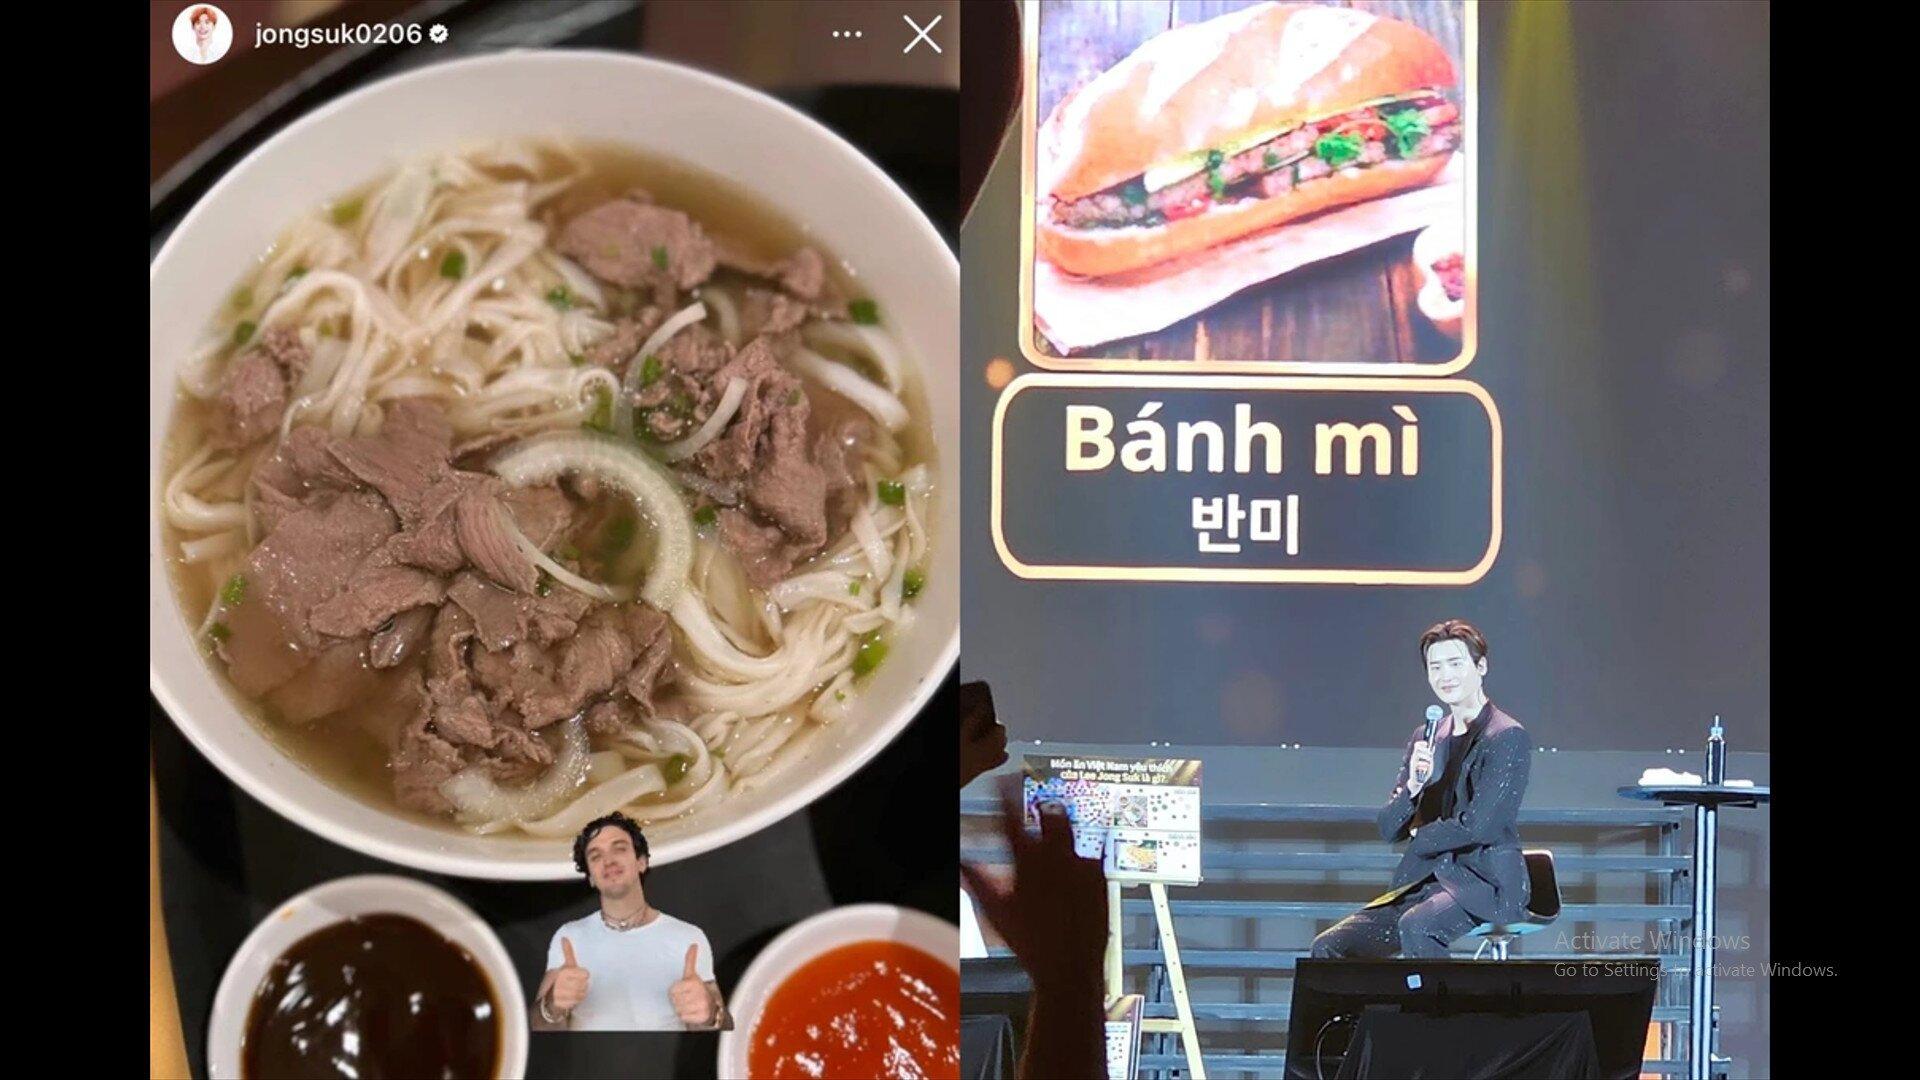 Khi đến Việt Nam, Jong Suk cũng được dịp thử nhiều món ăn và trong đó thì bánh mì là món anh chàng yêu thích nhất. (Ảnh: Internet)